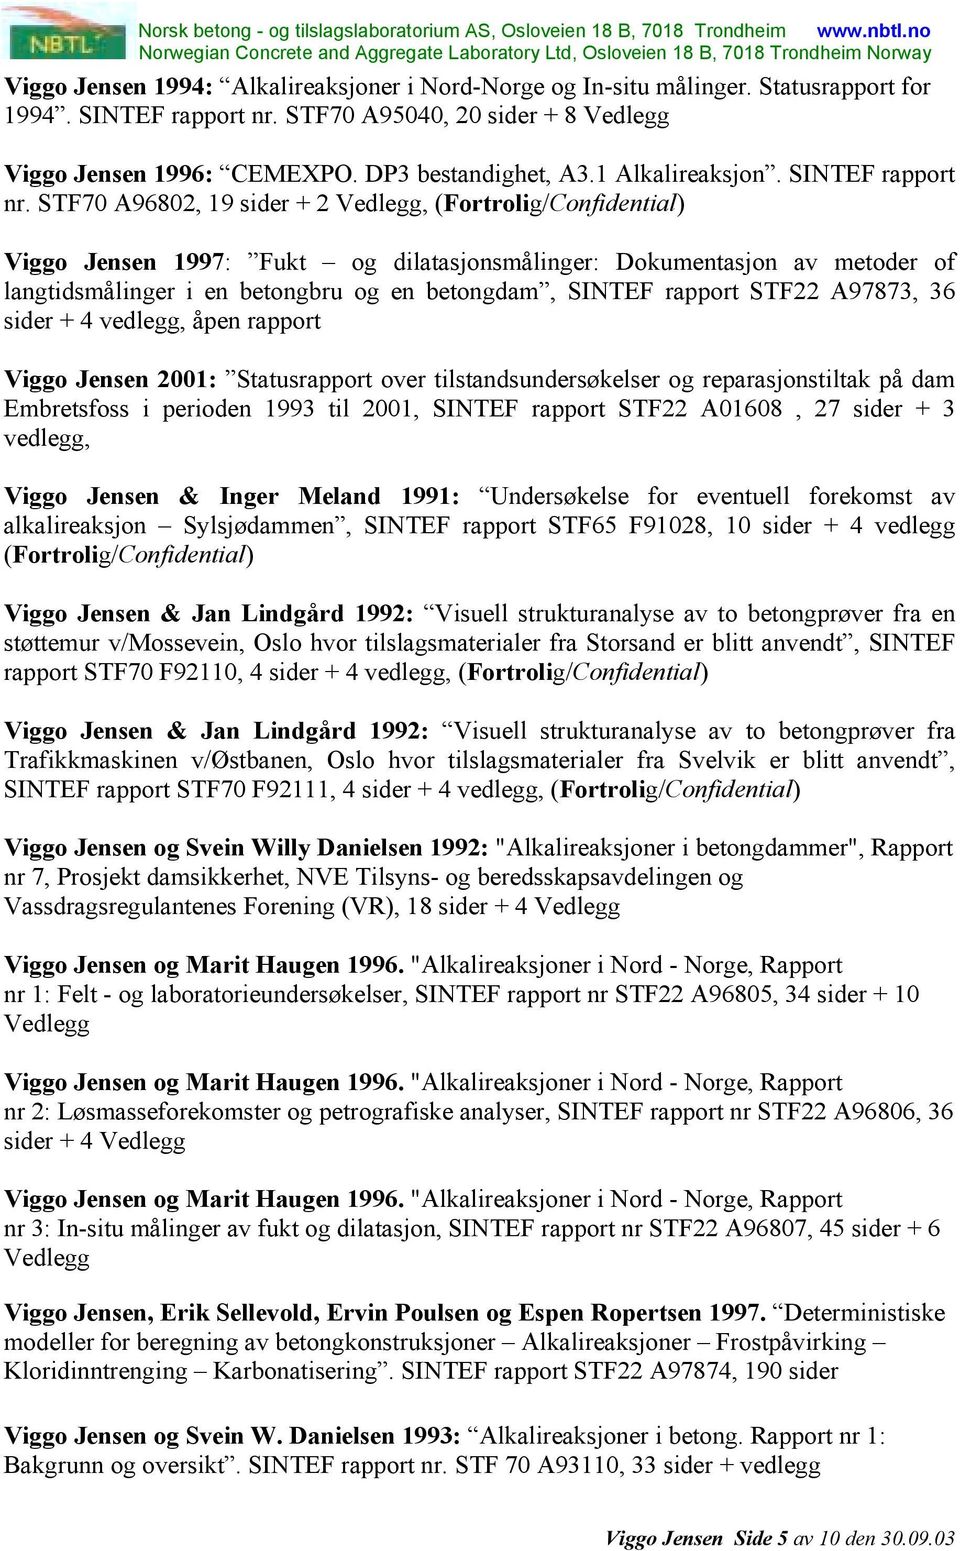 STF70 A96802, 19 sider + 2 Vedlegg, Viggo Jensen 1997: Fukt og dilatasjonsmålinger: Dokumentasjon av metoder of langtidsmålinger i en betongbru og en betongdam, SINTEF rapport STF22 A97873, 36 sider